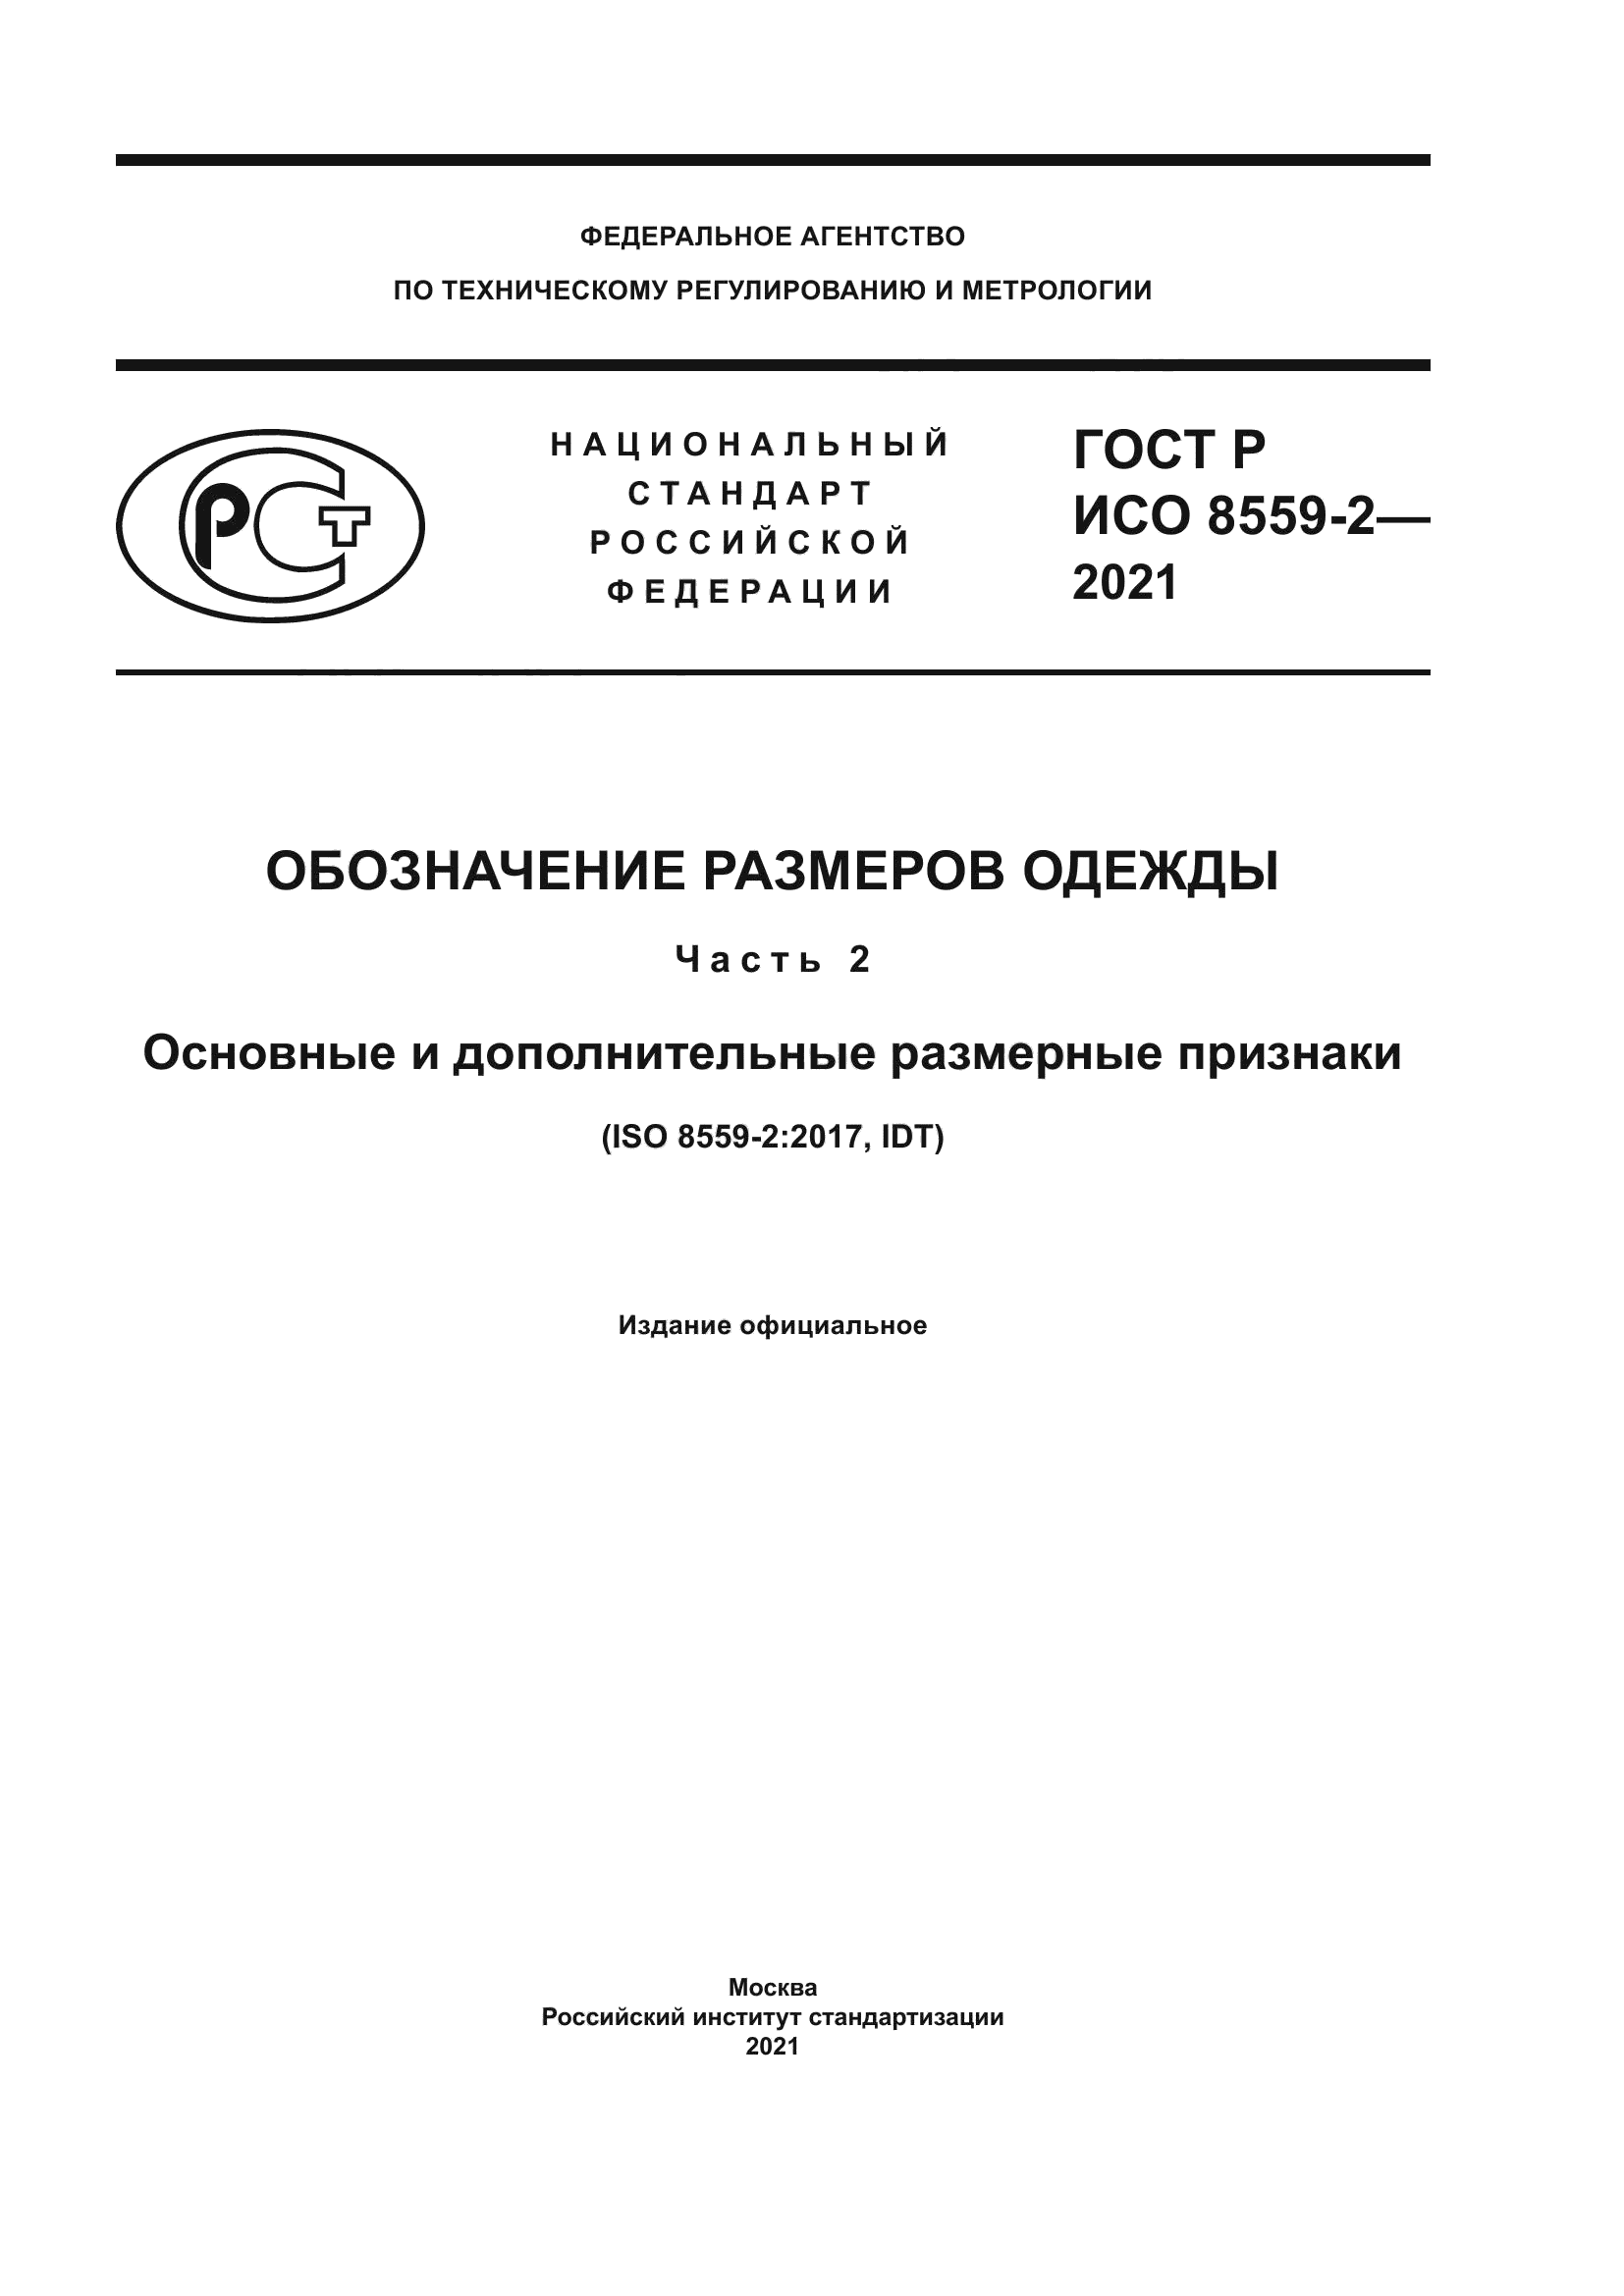 ГОСТ Р ИСО 8559-2-2021